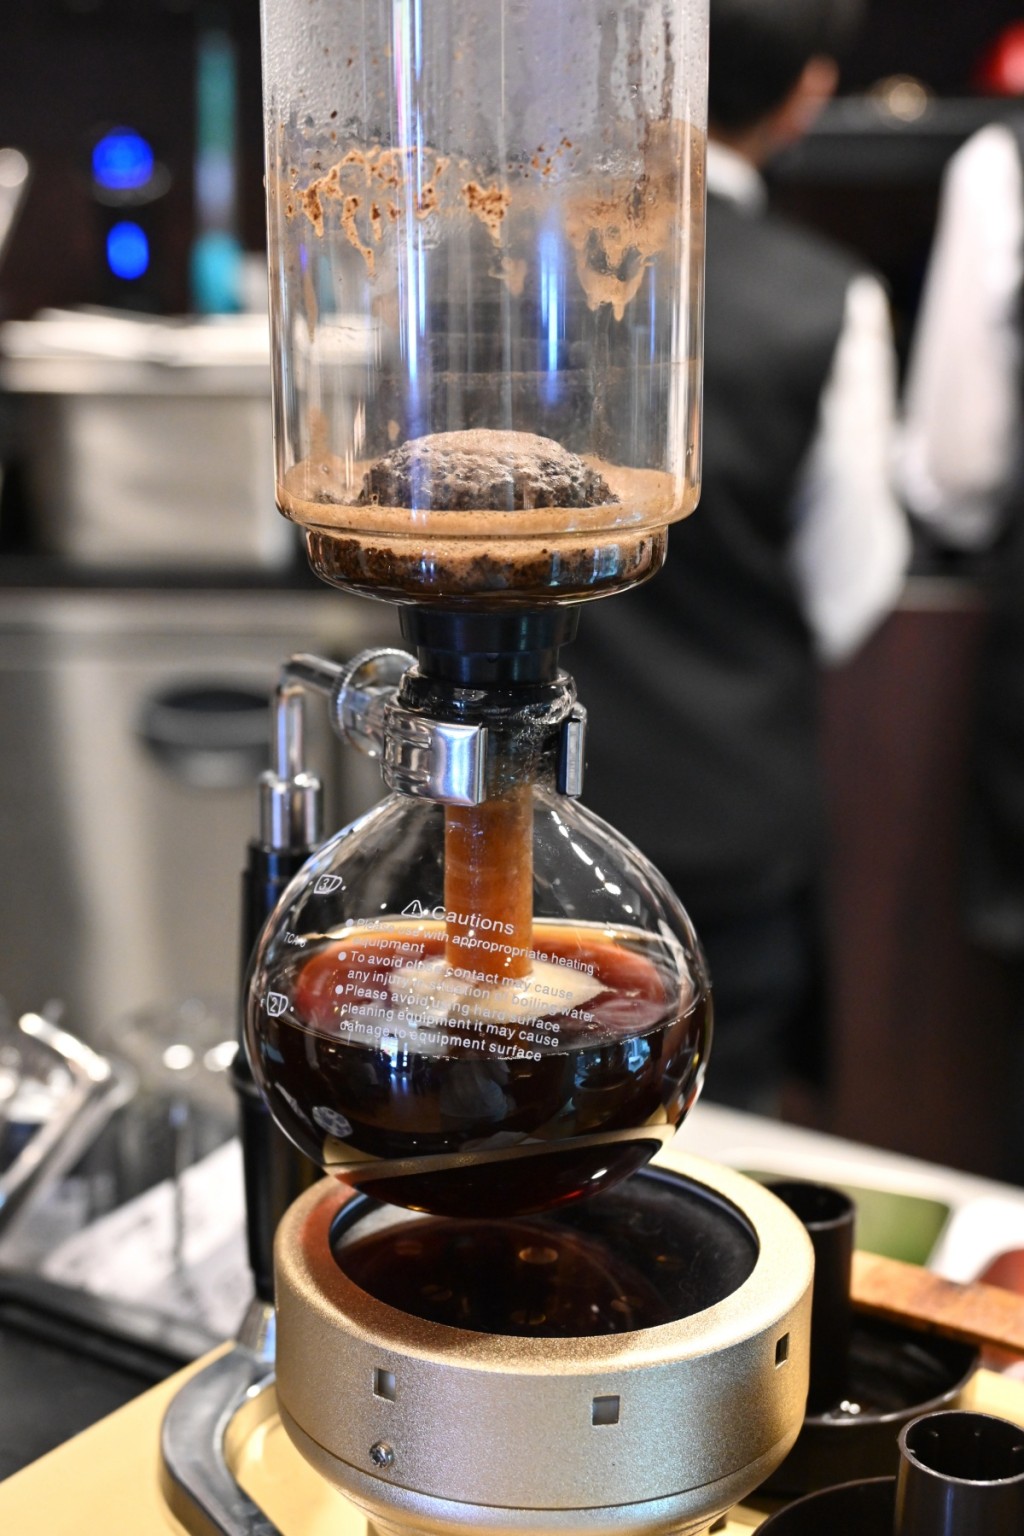 虹吸咖啡，招牌手冲虹吸咖啡，凸显焙煎咖啡豆的最佳风味。客人可自选咖啡杯，喝起来分外甘醇美味。